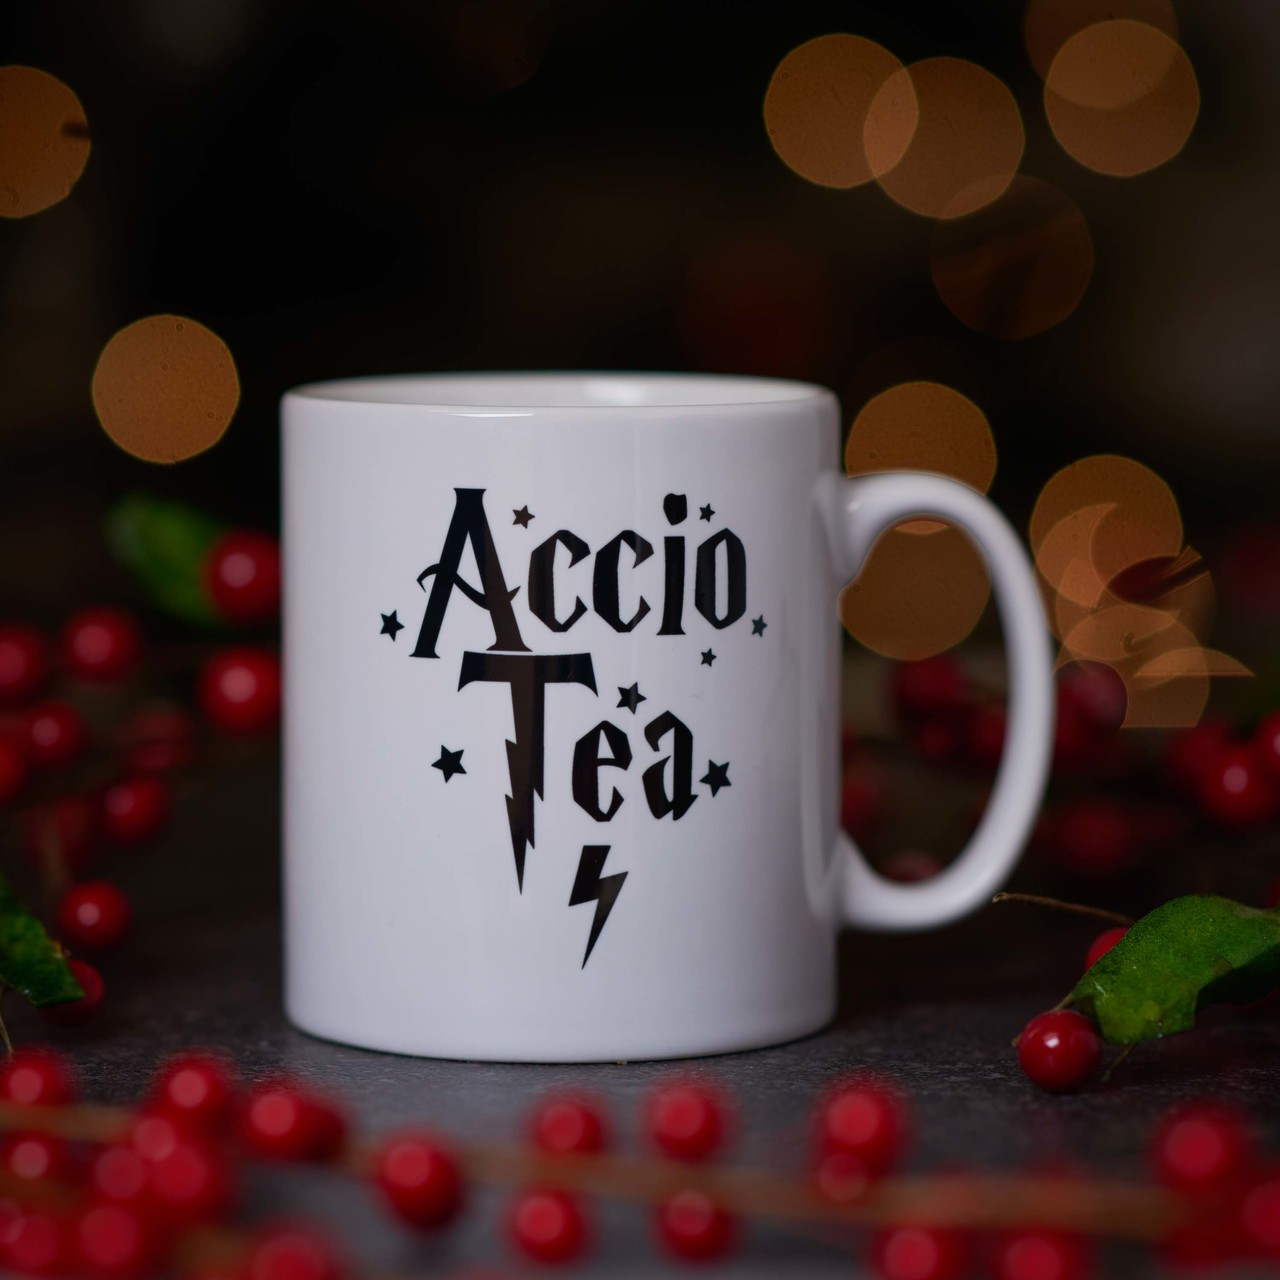 Accio Tea Mug.